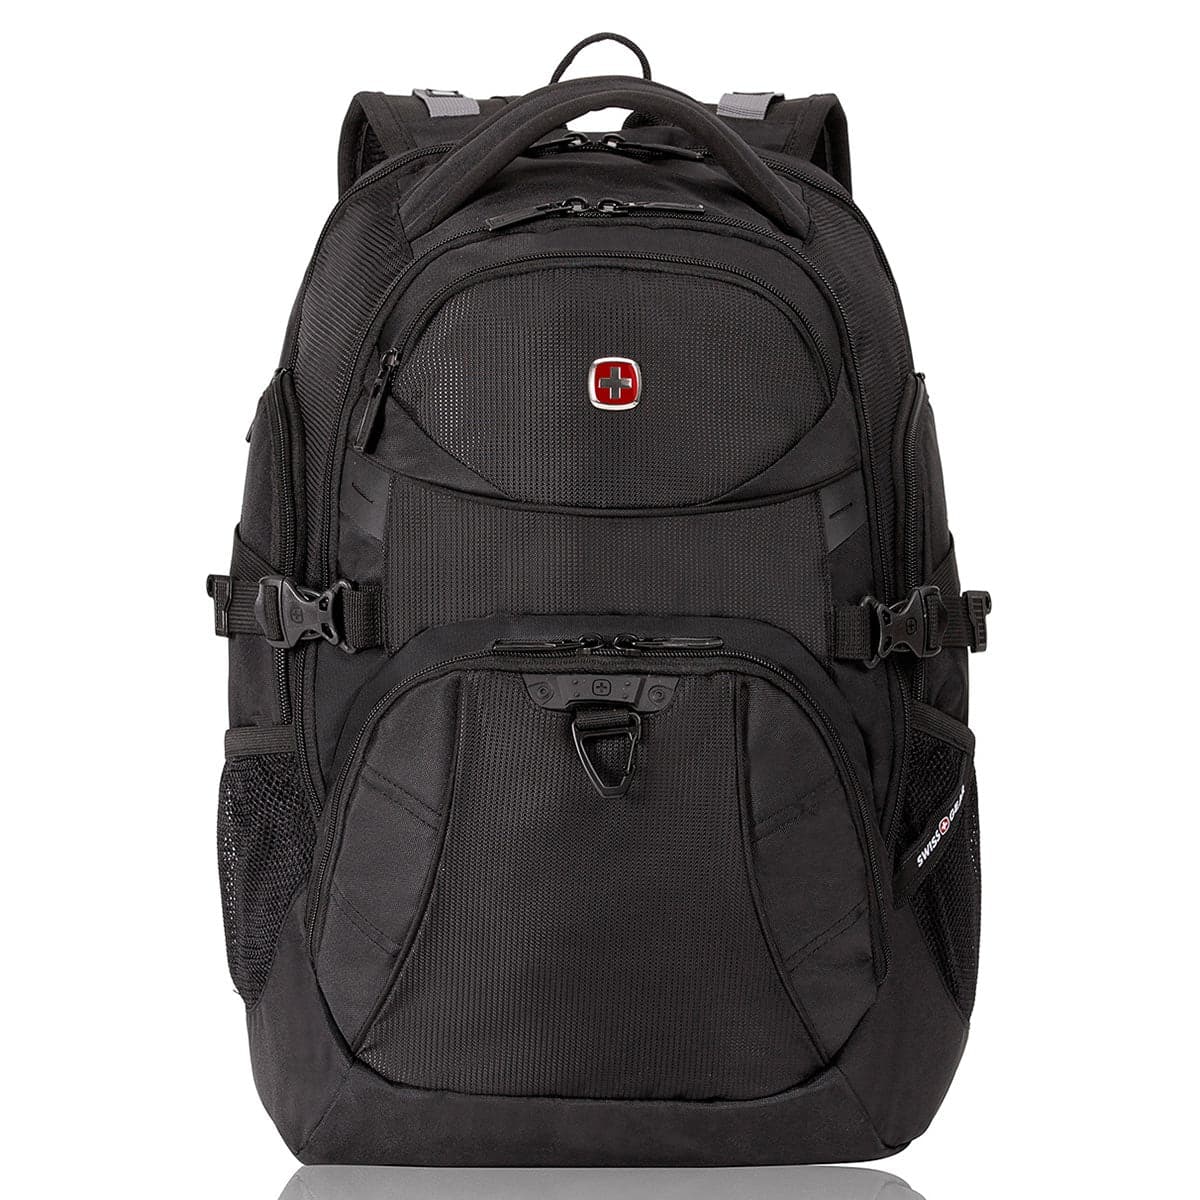 SwissGear 5901 Laptop Backpack